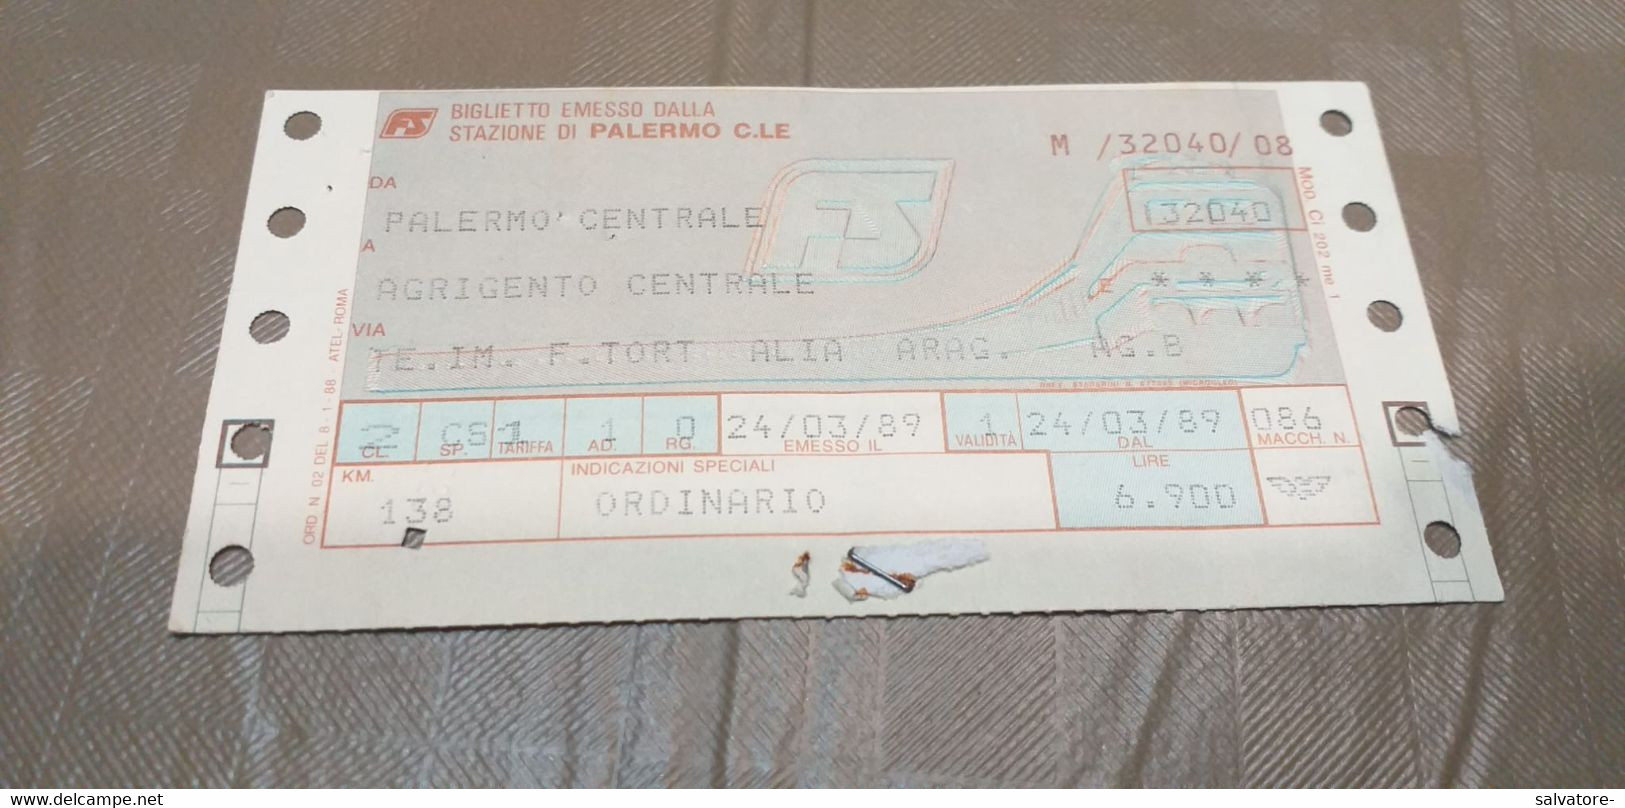 BIGLIETTO DA PALERMO  CENTRALE A AGRIGENTO CENTRALE 1989 - Europa